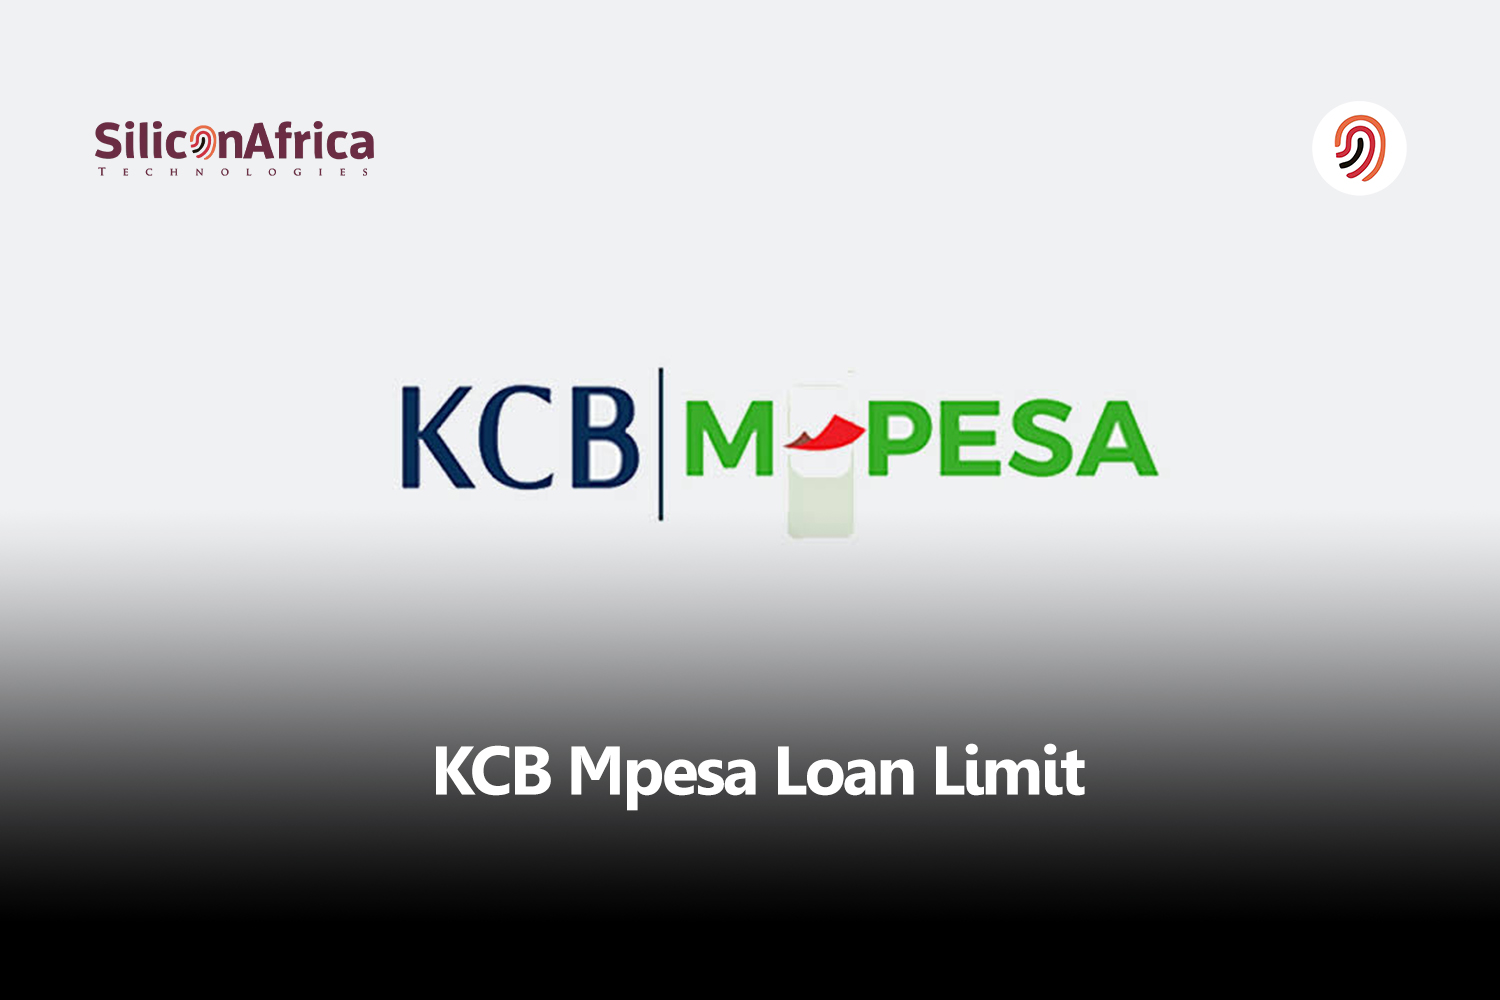 kcb mpesa loan limit